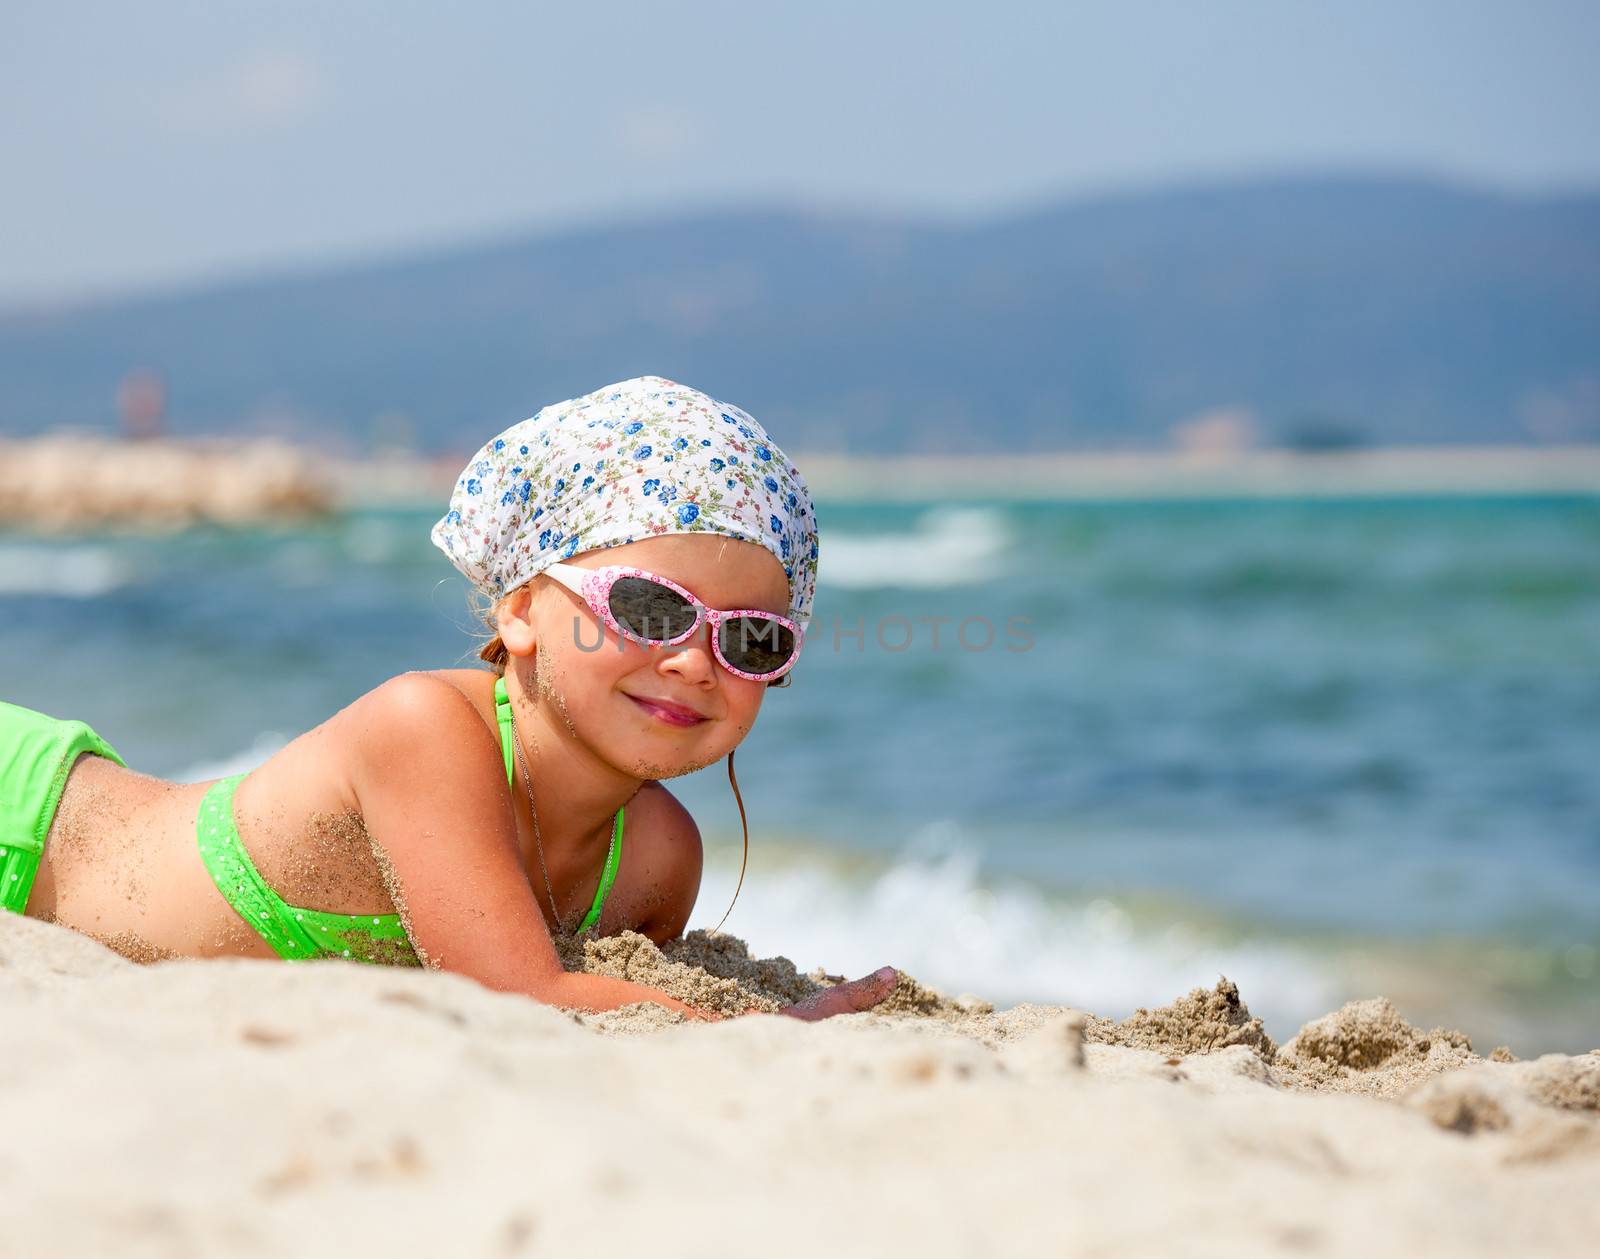 Little girl enjoying summer day on a beach